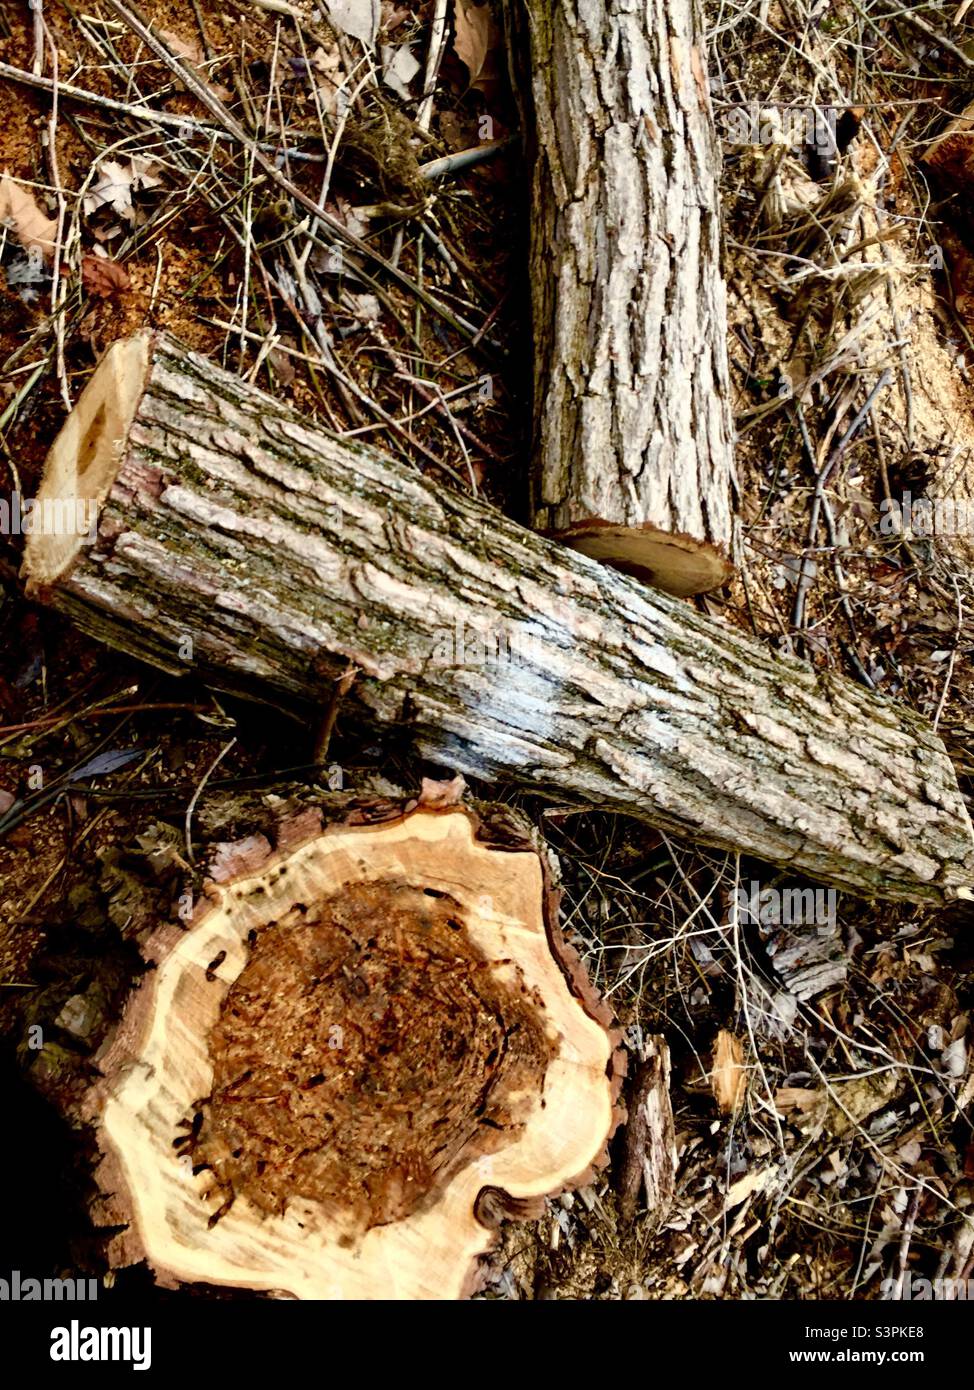 Arbre coupé en raison de dommages à la termite. La base et deux sections du tronc se trouvant sur le sol où il a grandi, Ontario, Canada. Banque D'Images